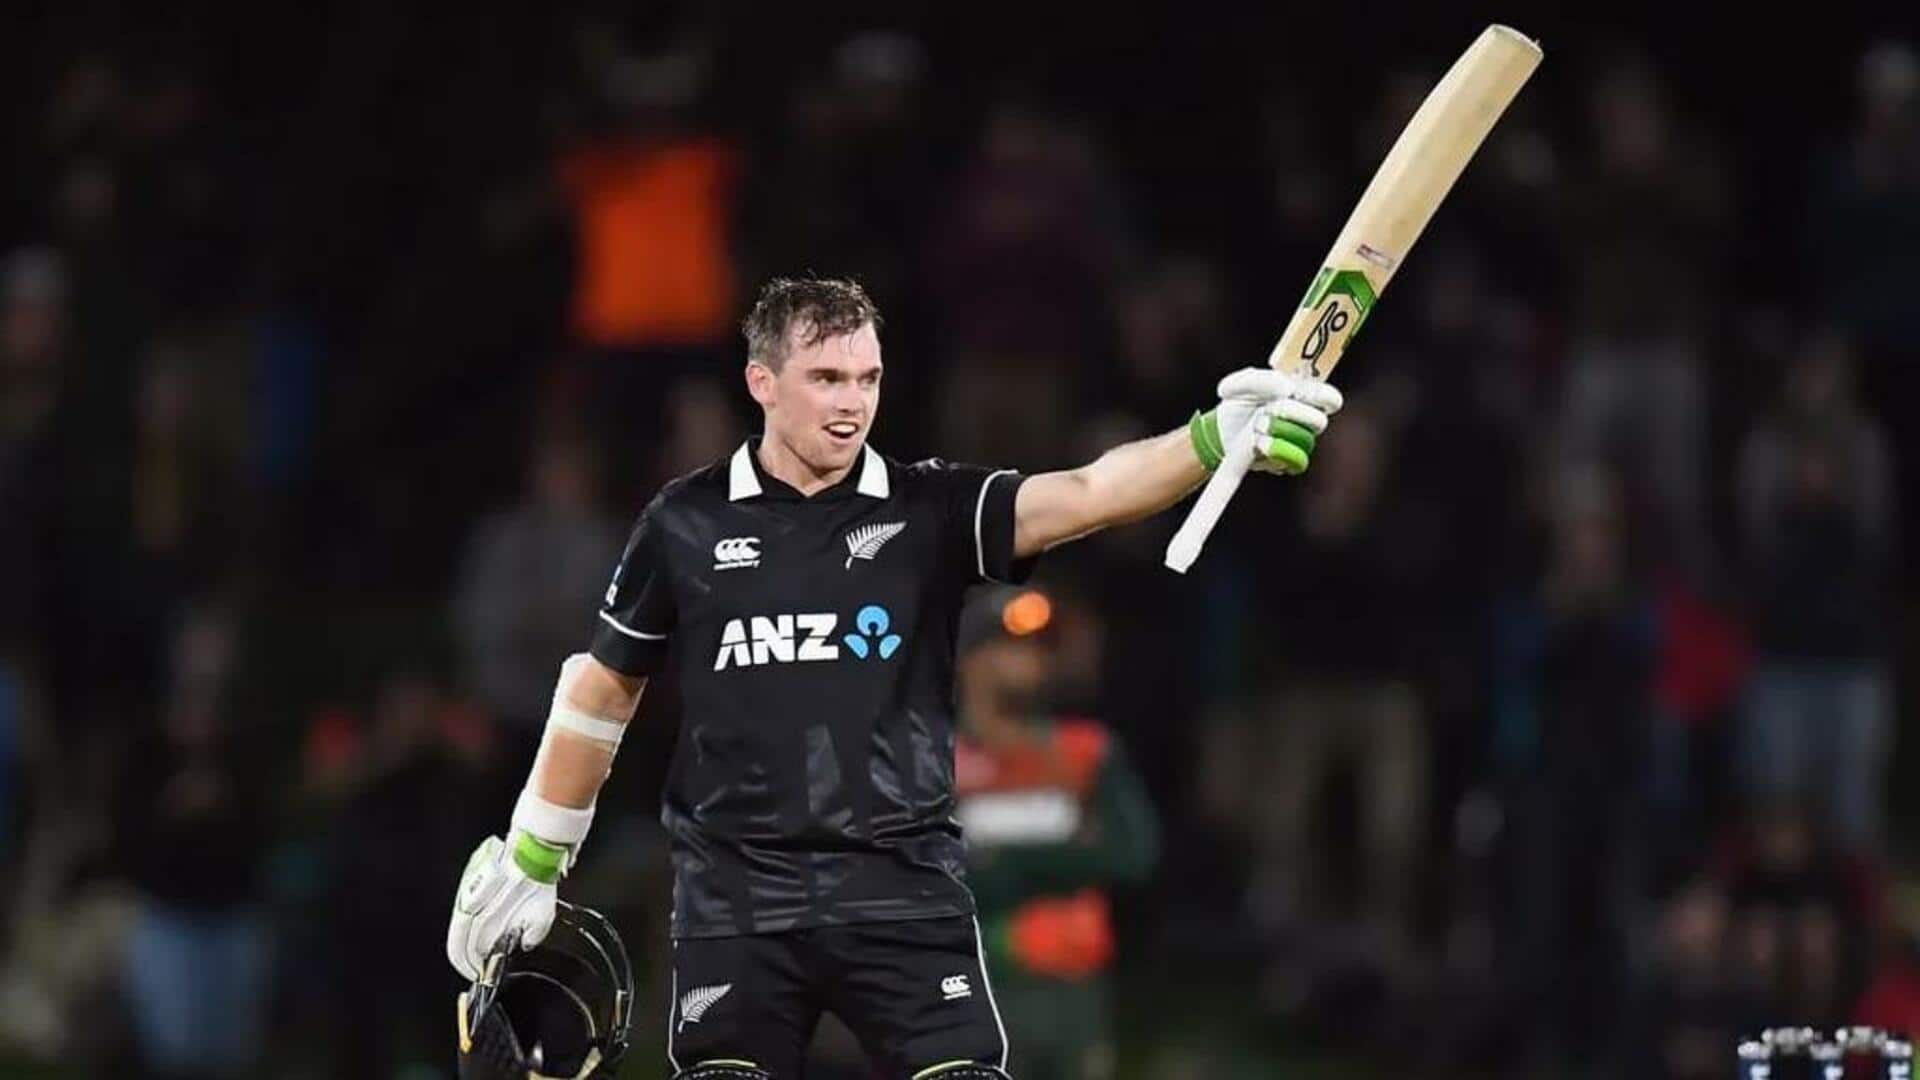 टॉम लैथम होंगे श्रीलंका के खिलाफ वनडे सीरीज में न्यूजीलैंड के कप्तान, टीम घोषित